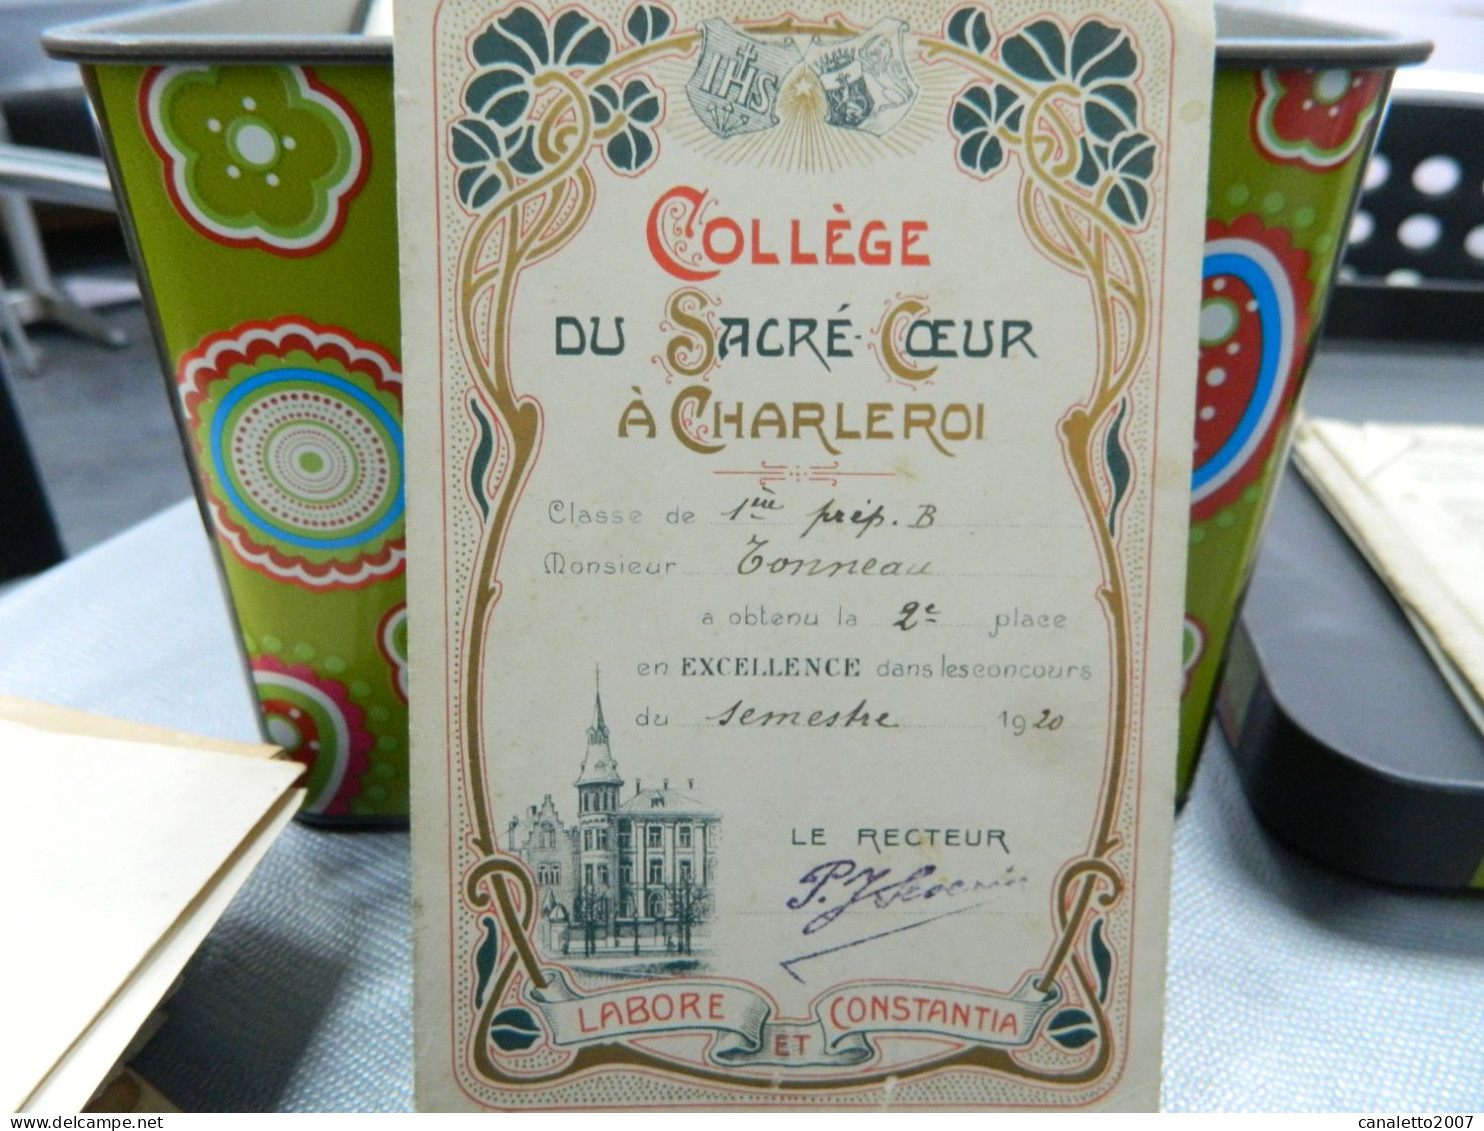 CHARLEROI: COLLEGE DU SACRE COEUR A CHARLEROI CARTE D'EXCELLENCE  DE M.TONNEAU EN 1920-DECOR ART NOUVEAU - Diplômes & Bulletins Scolaires